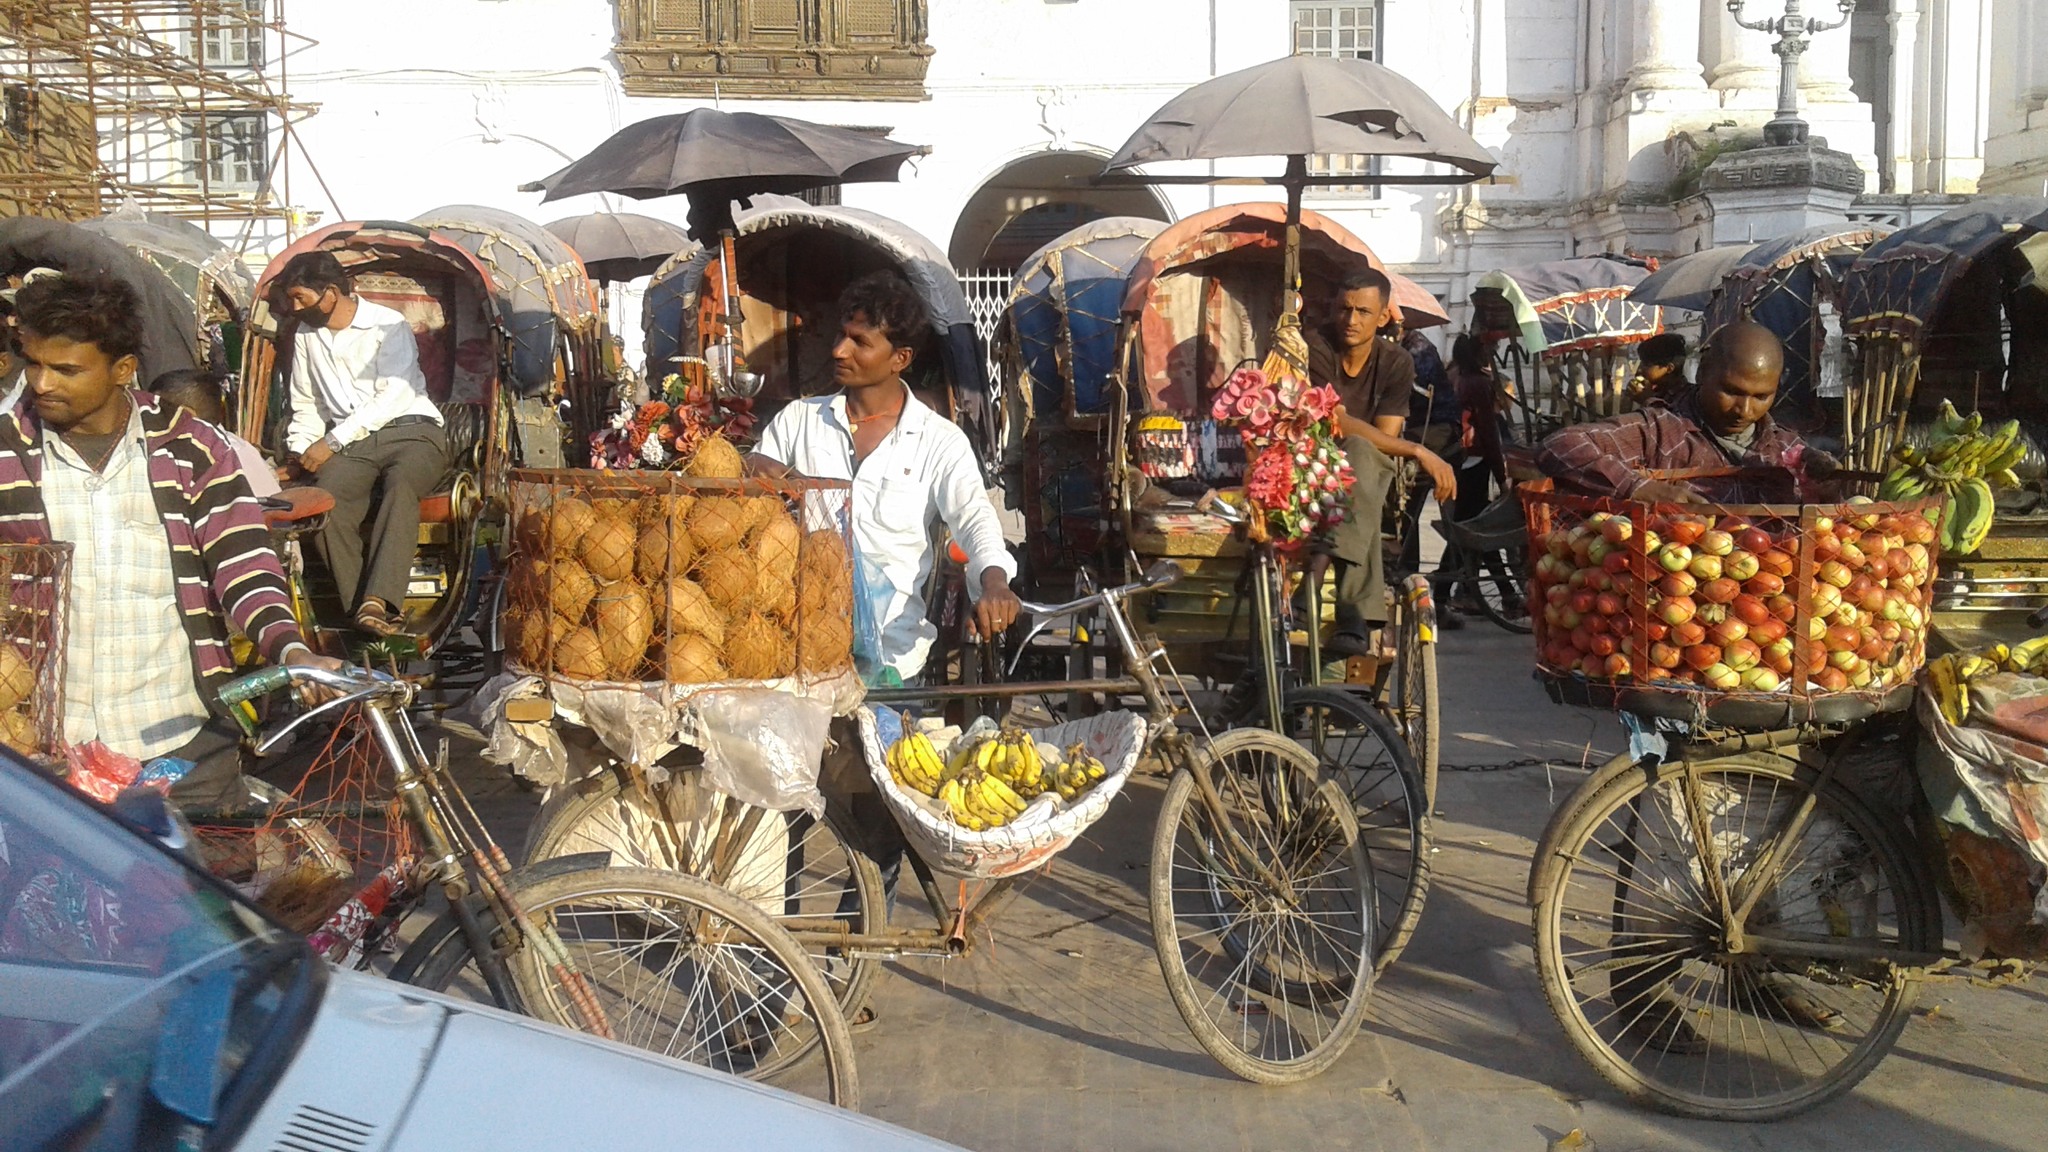 Rickshaws in Durbar Square in Kathmandu